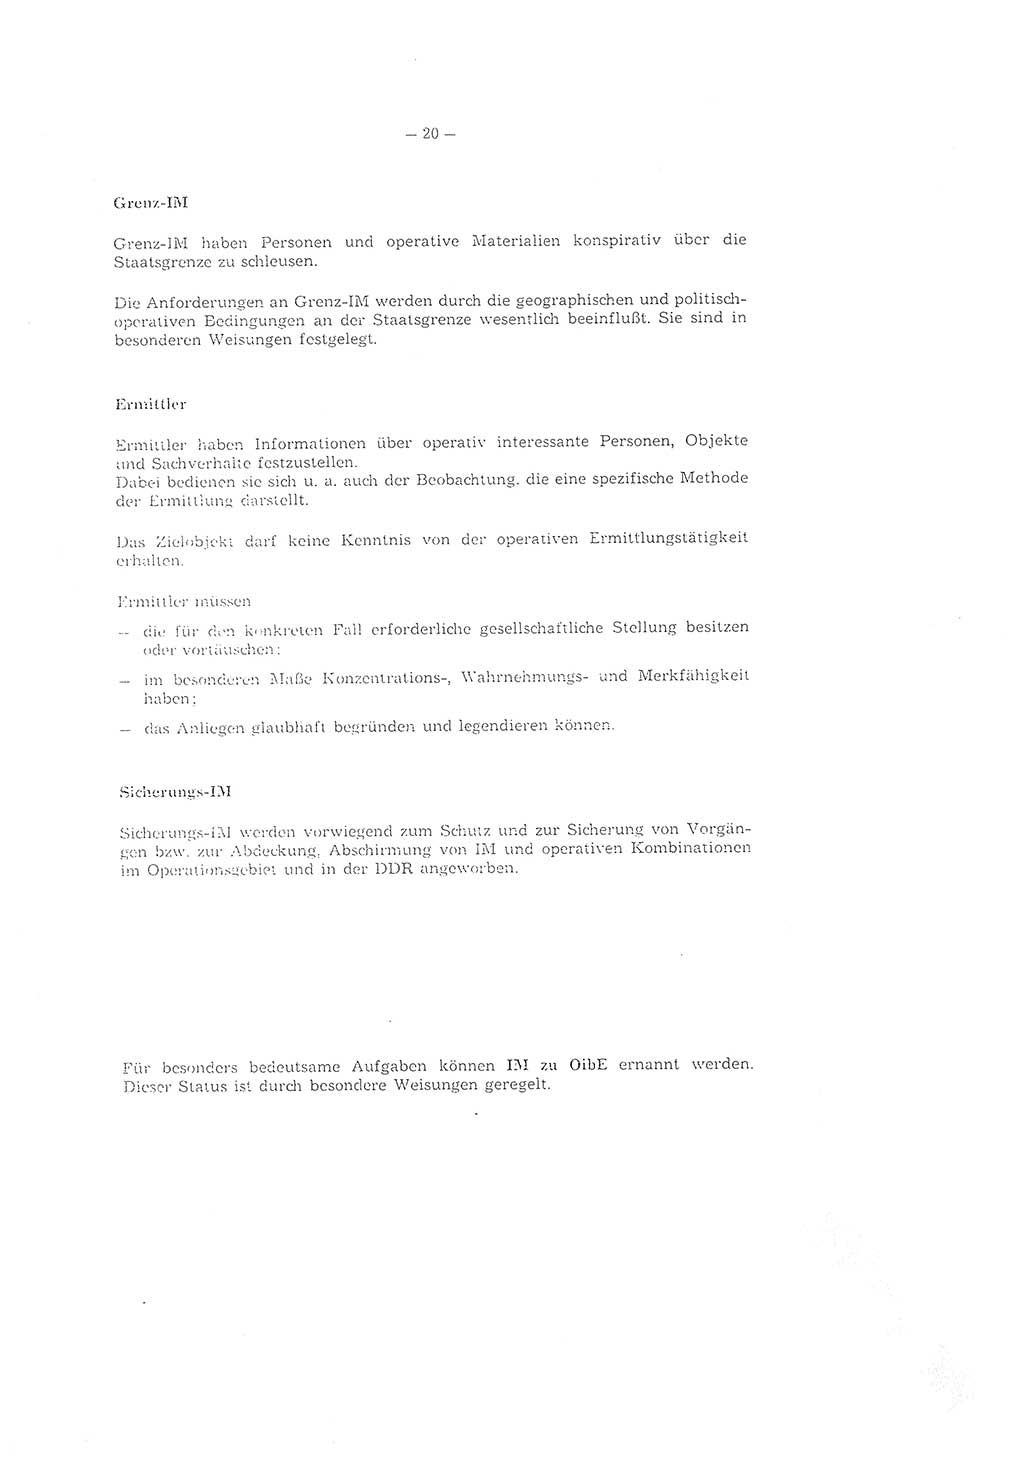 Richtlinie 2/79 für die Arbeit mit Inoffiziellen Mitarbeitern (IM) im Operationsgebiet, Deutsche Demokratische Republik (DDR), Ministerium für Staatssicherheit (MfS), Der Minister (Mielke), Geheime Verschlußsache (GVS) ooo8-2/79, Berlin 1979, Seite 20 (RL 2/79 DDR MfS Min. GVS ooo8-2/79 1979, S. 20)